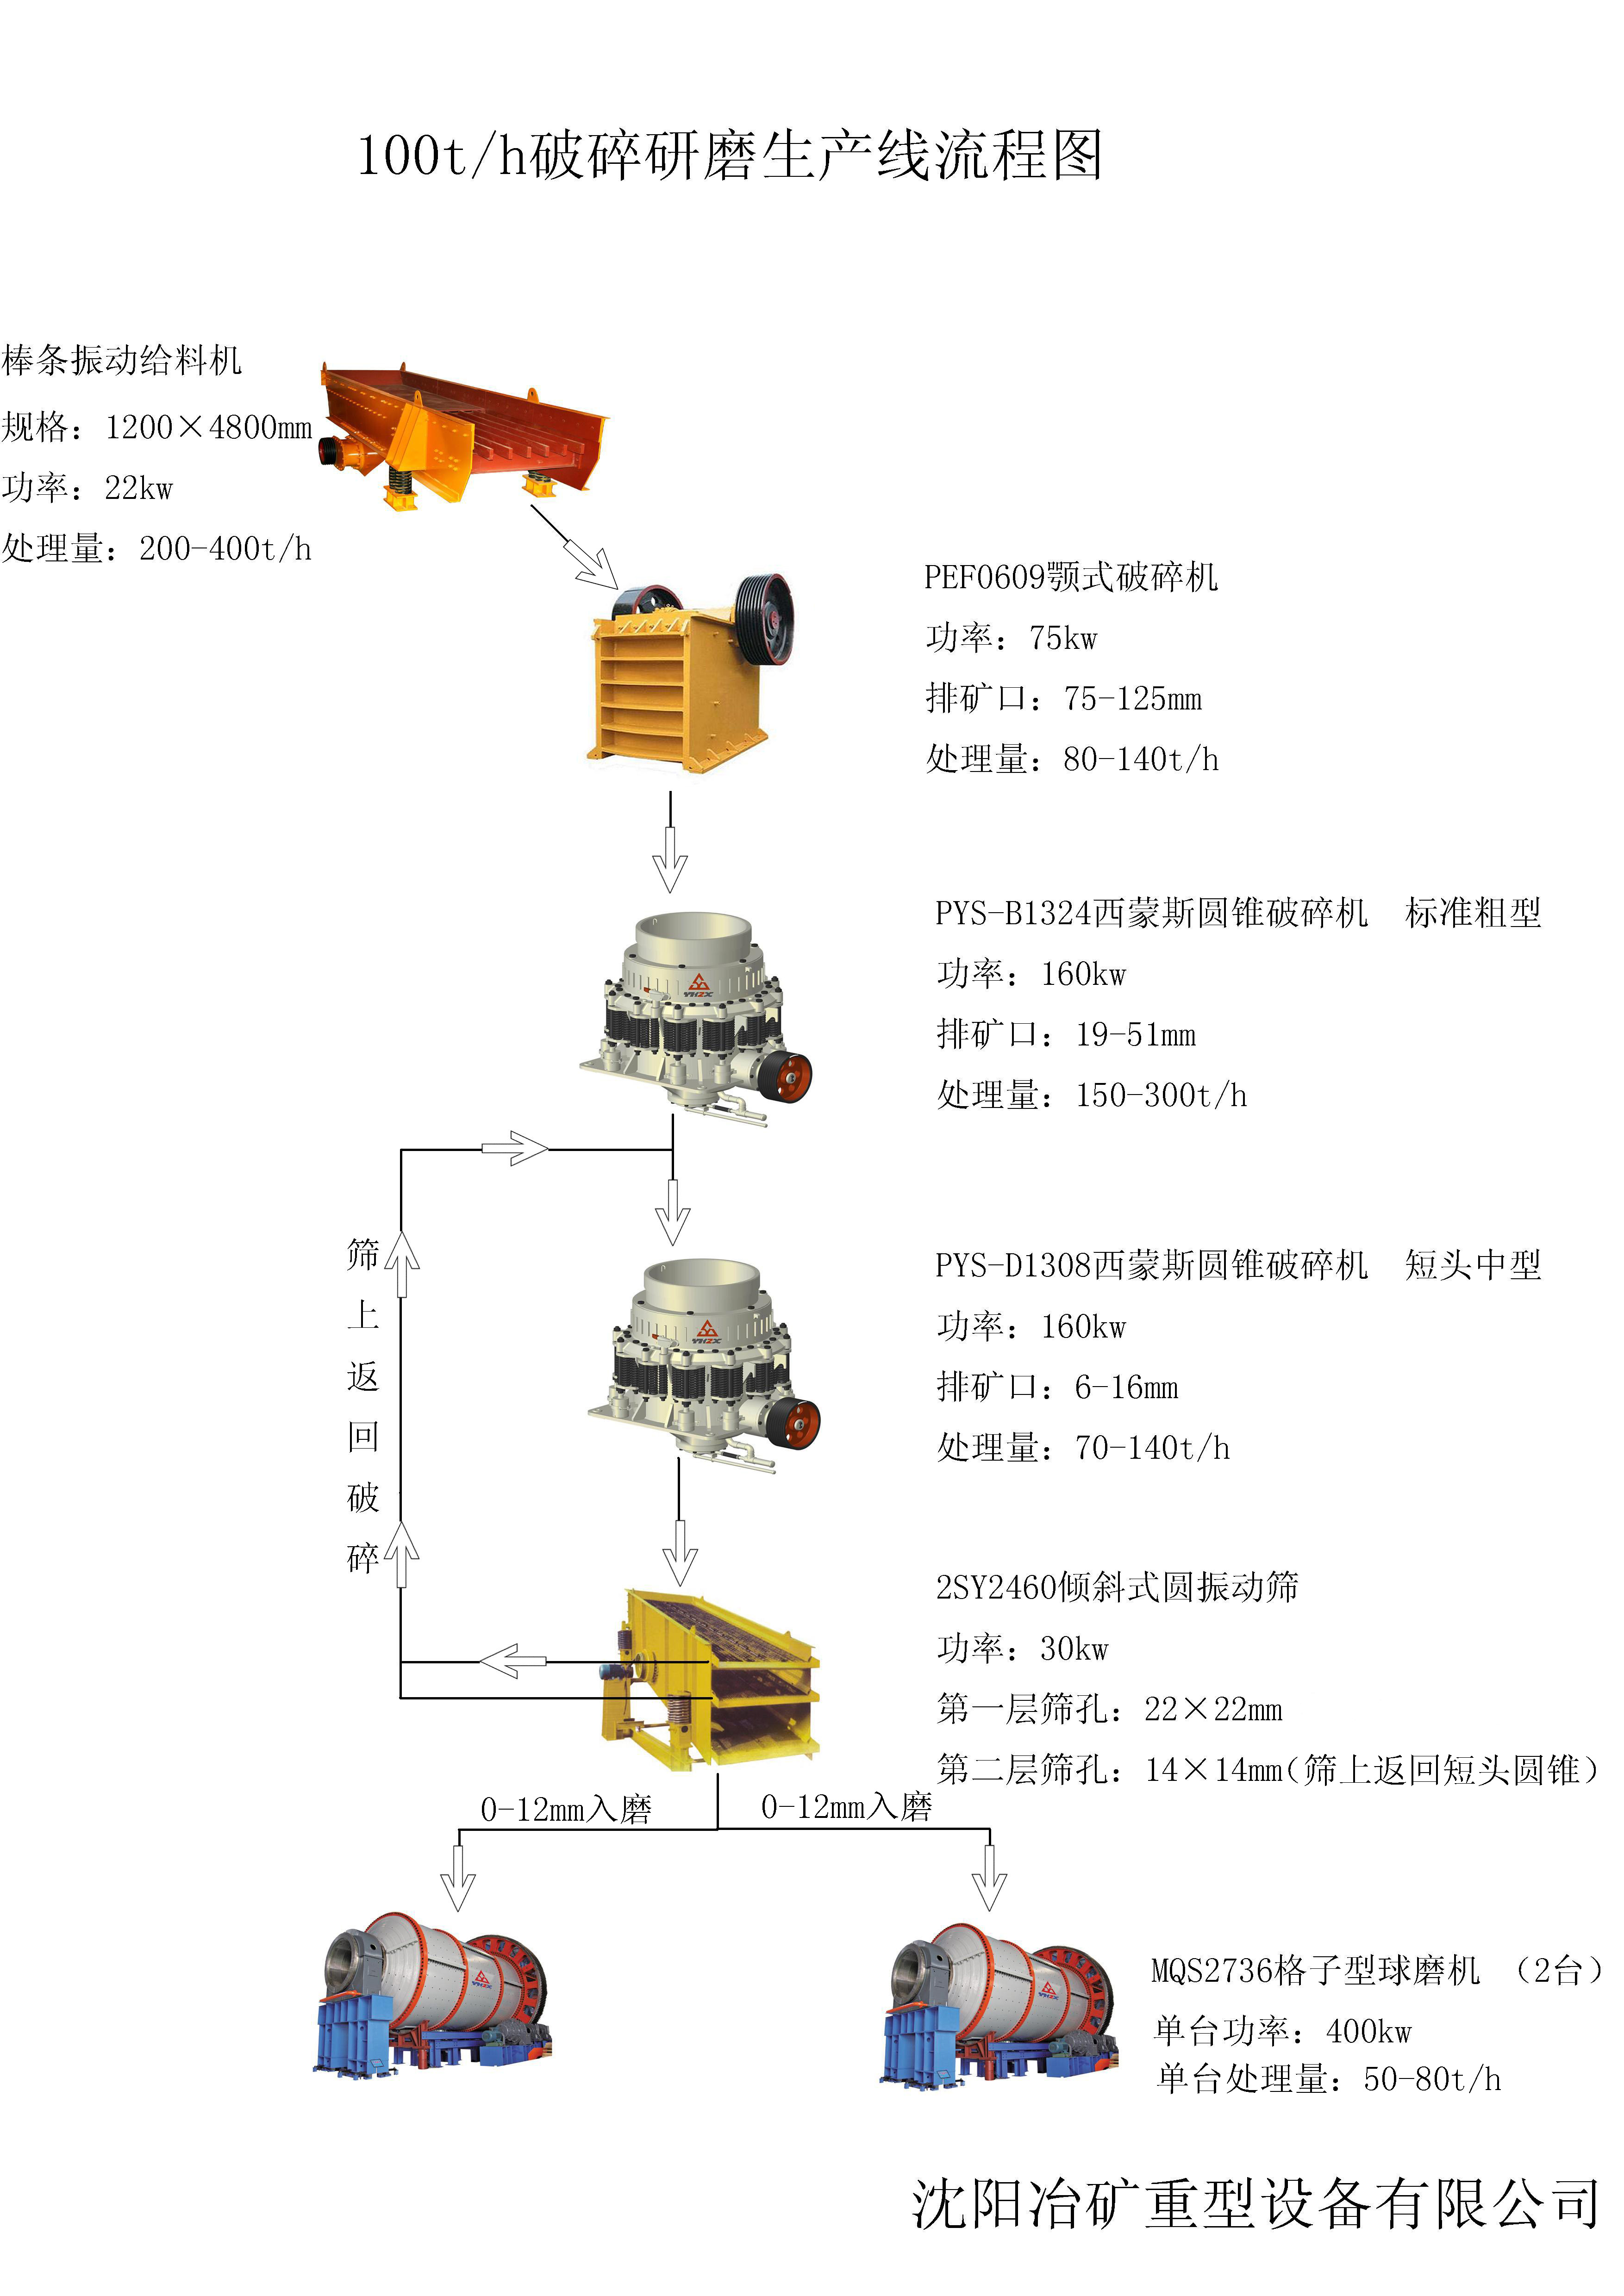 100t-h制砂研磨生产线(图1)